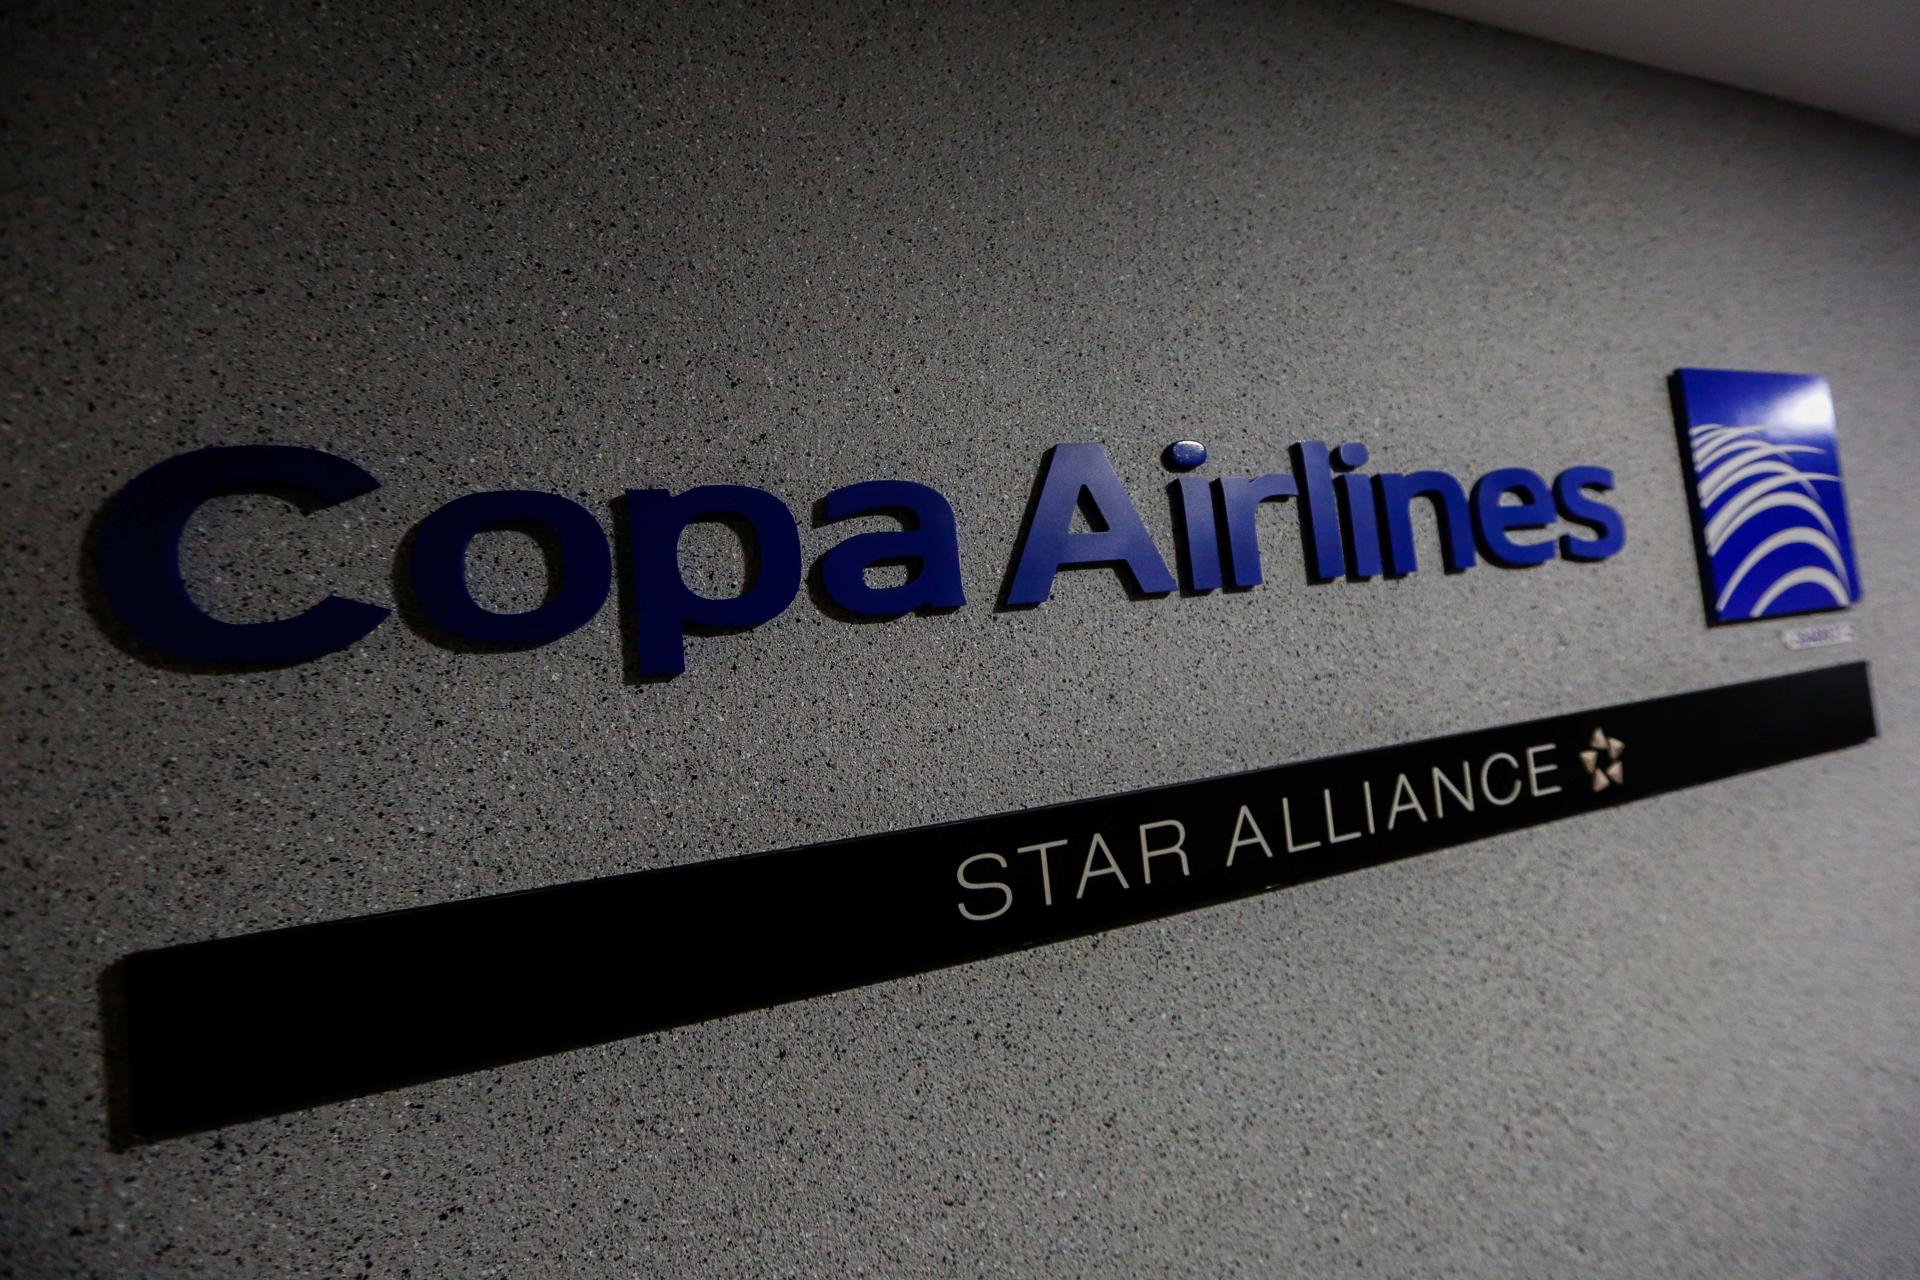 Pilotos de la aerolínea panameña Copa Arlines anuncian huelga